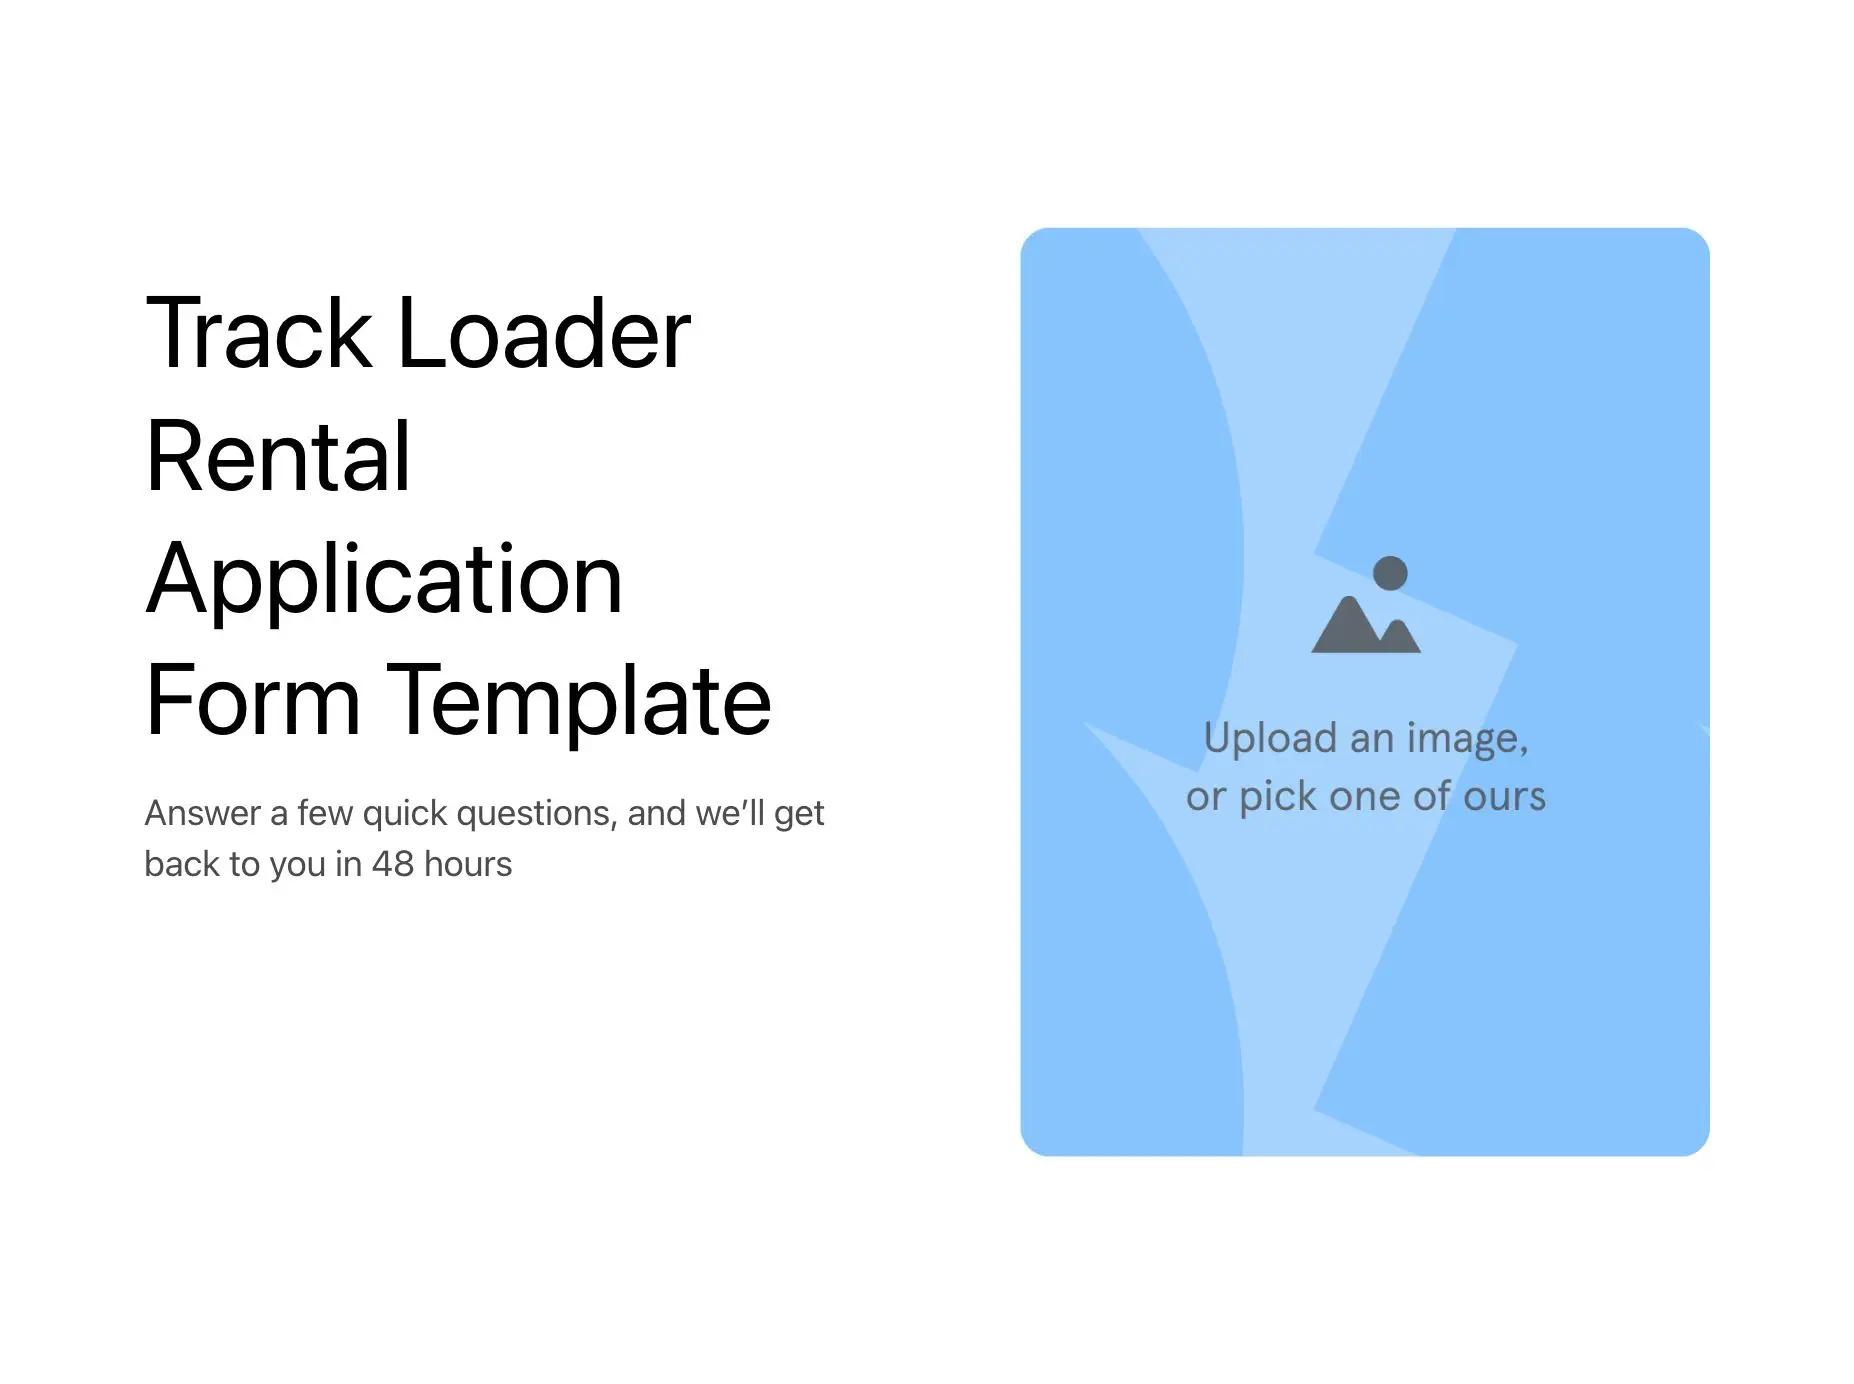 Track Loader Rental Application Form Template Hero